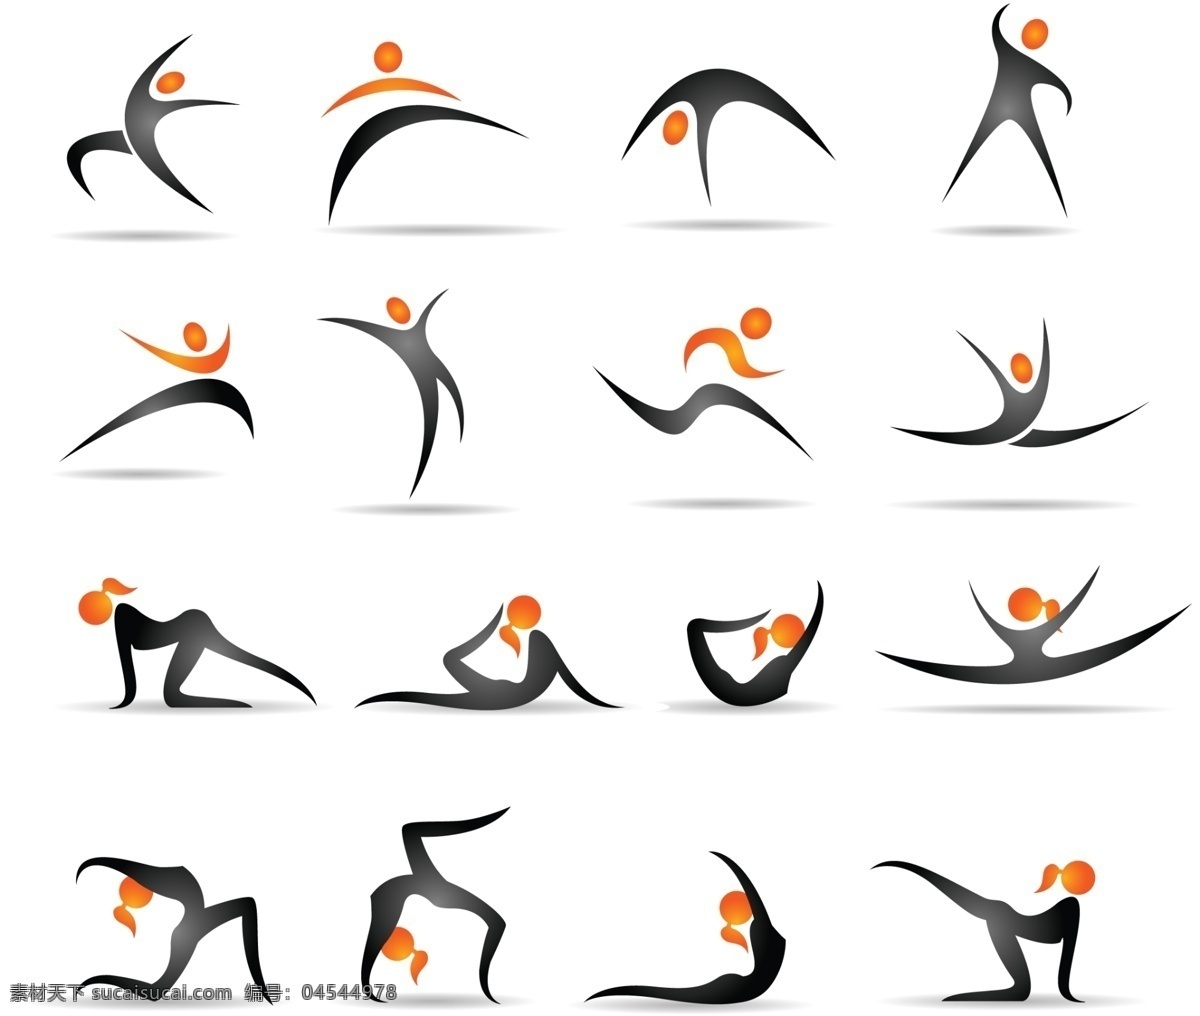 体操 动作 演示 图 矢量 步骤 剪影 建模 图形 小人 行动 瑜伽 图形演示 矢量图 其他矢量图